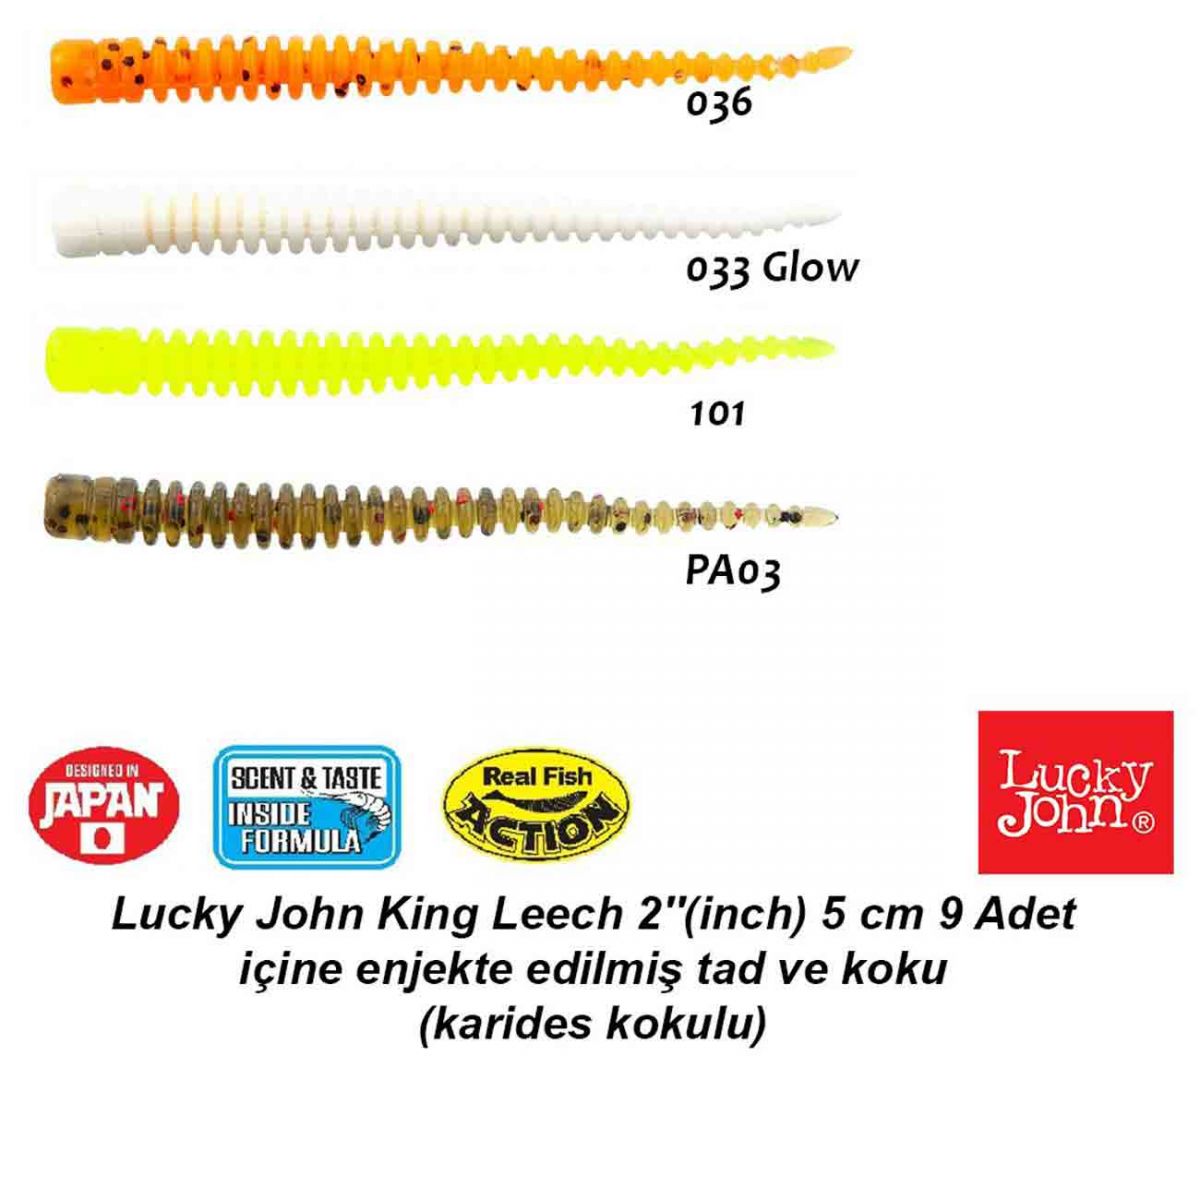  Lucky John King Leech 2 İnch (5 cm) Lrf Silikon Yem, 1 paket içinde 9 adet bulunmaktadır.